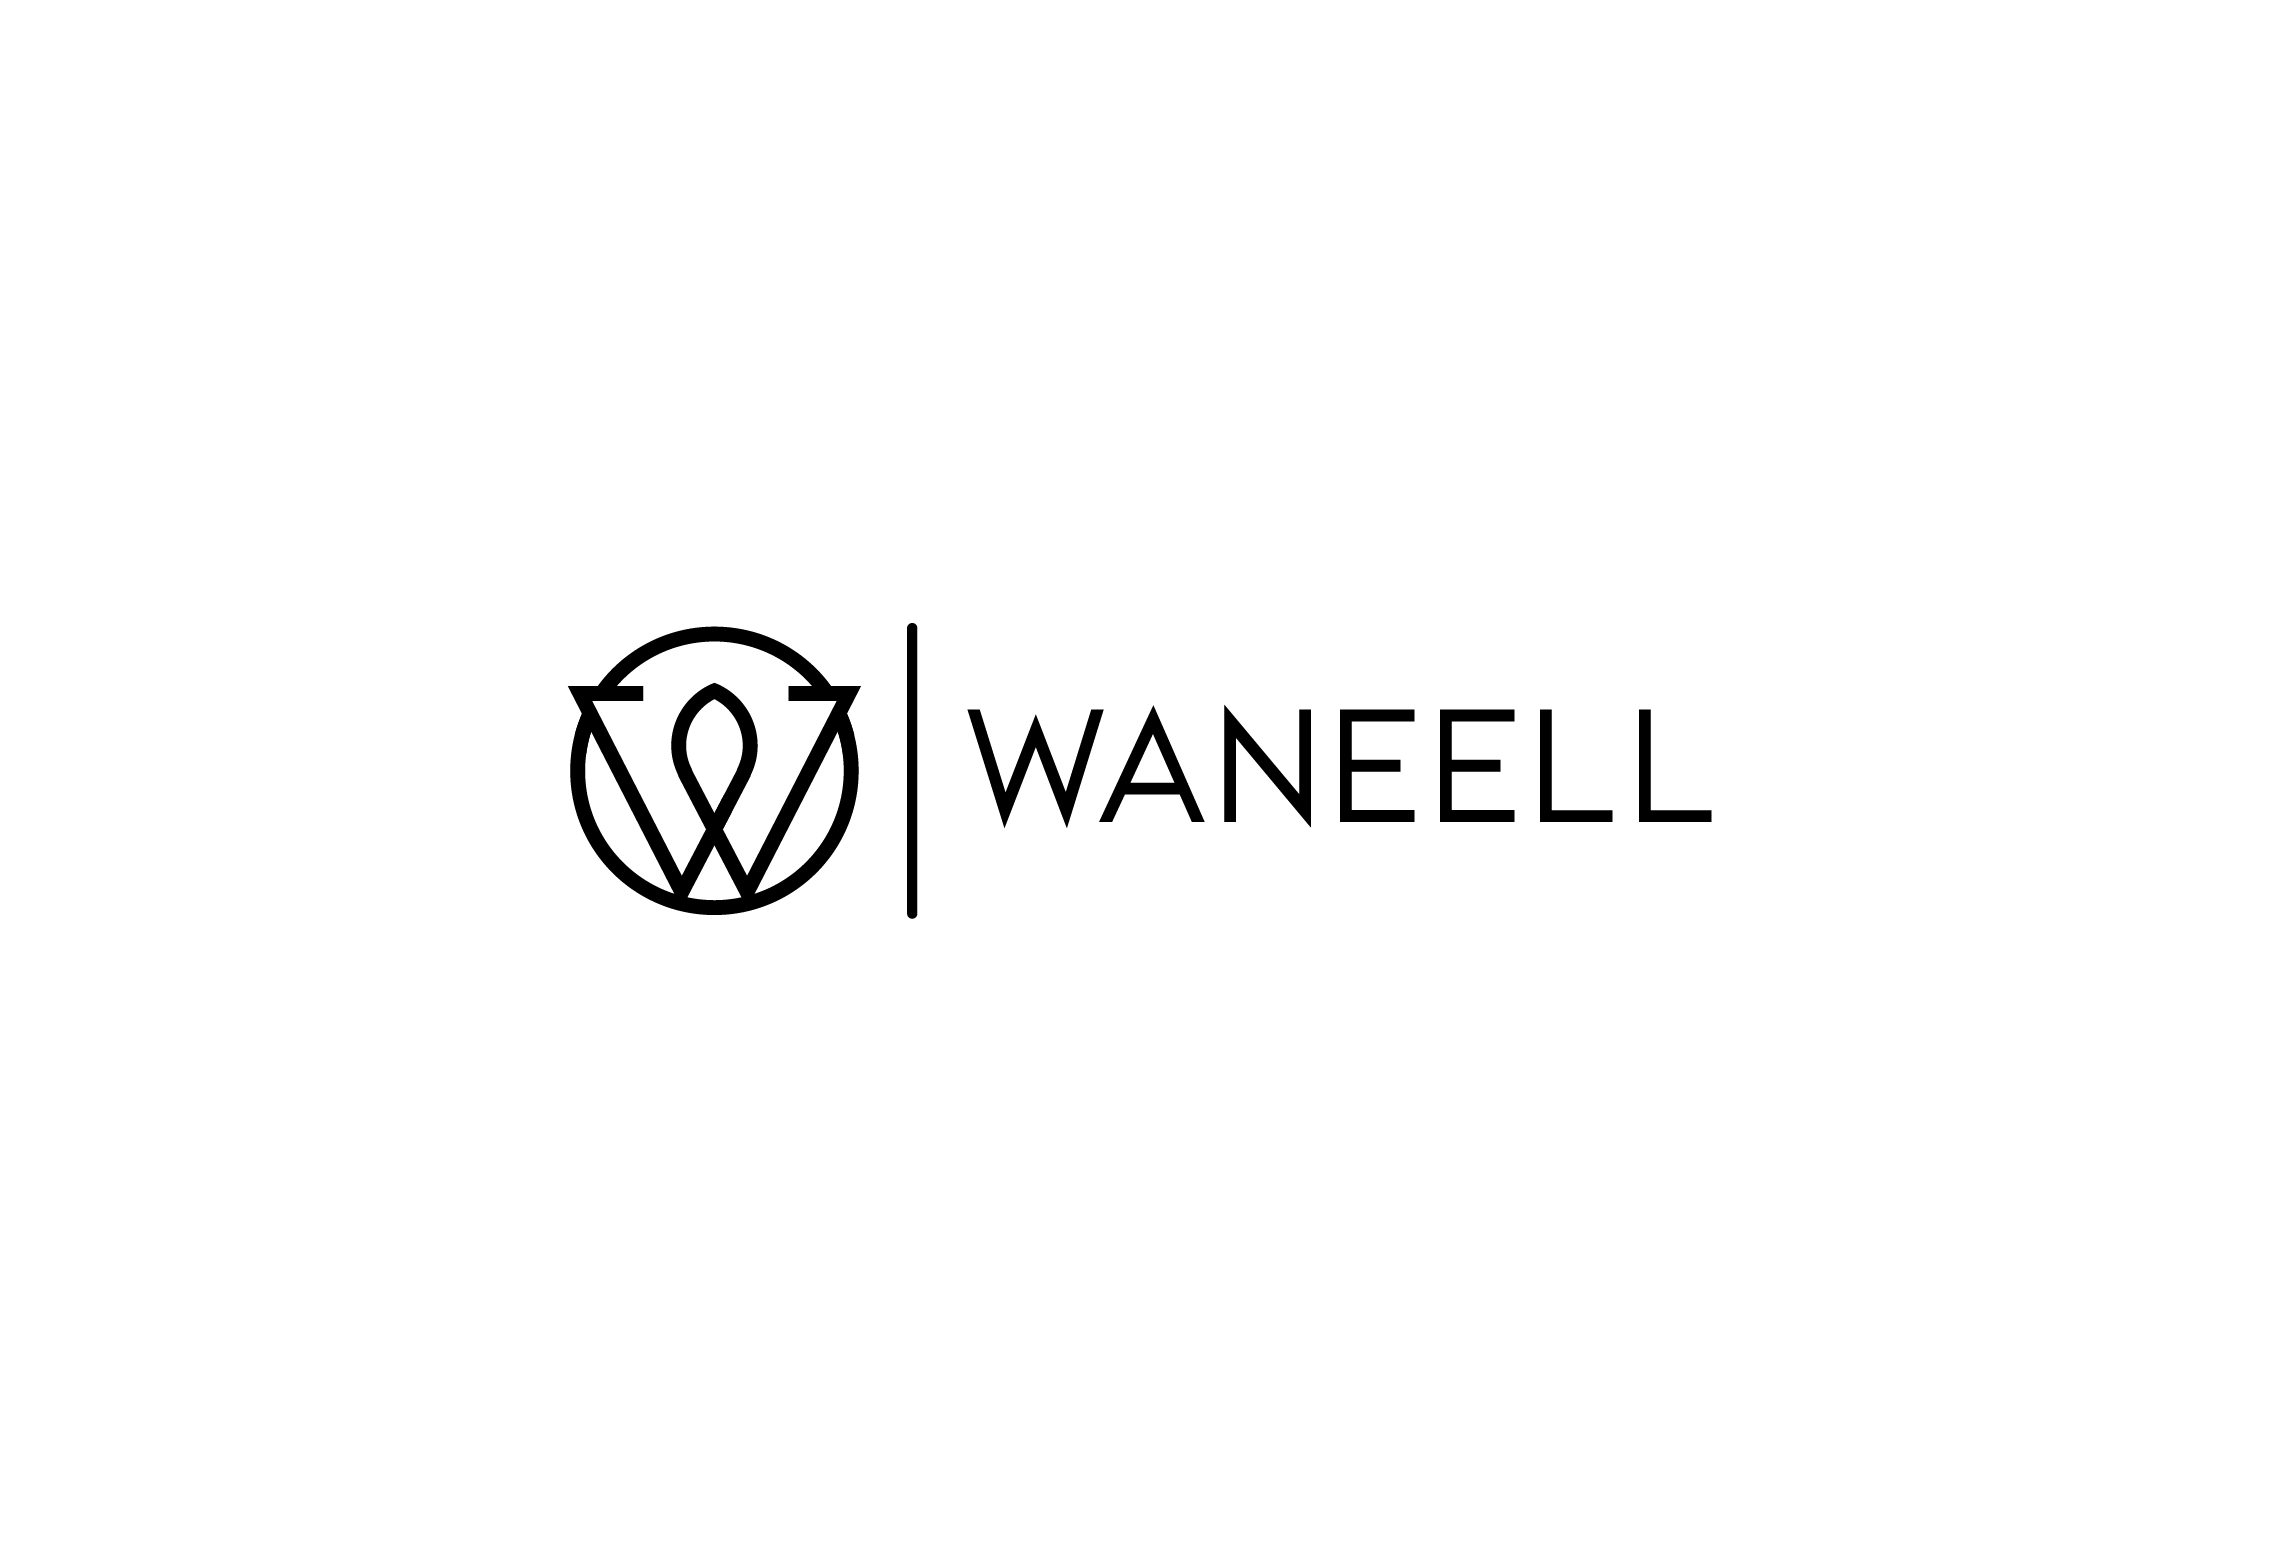 WANEELL